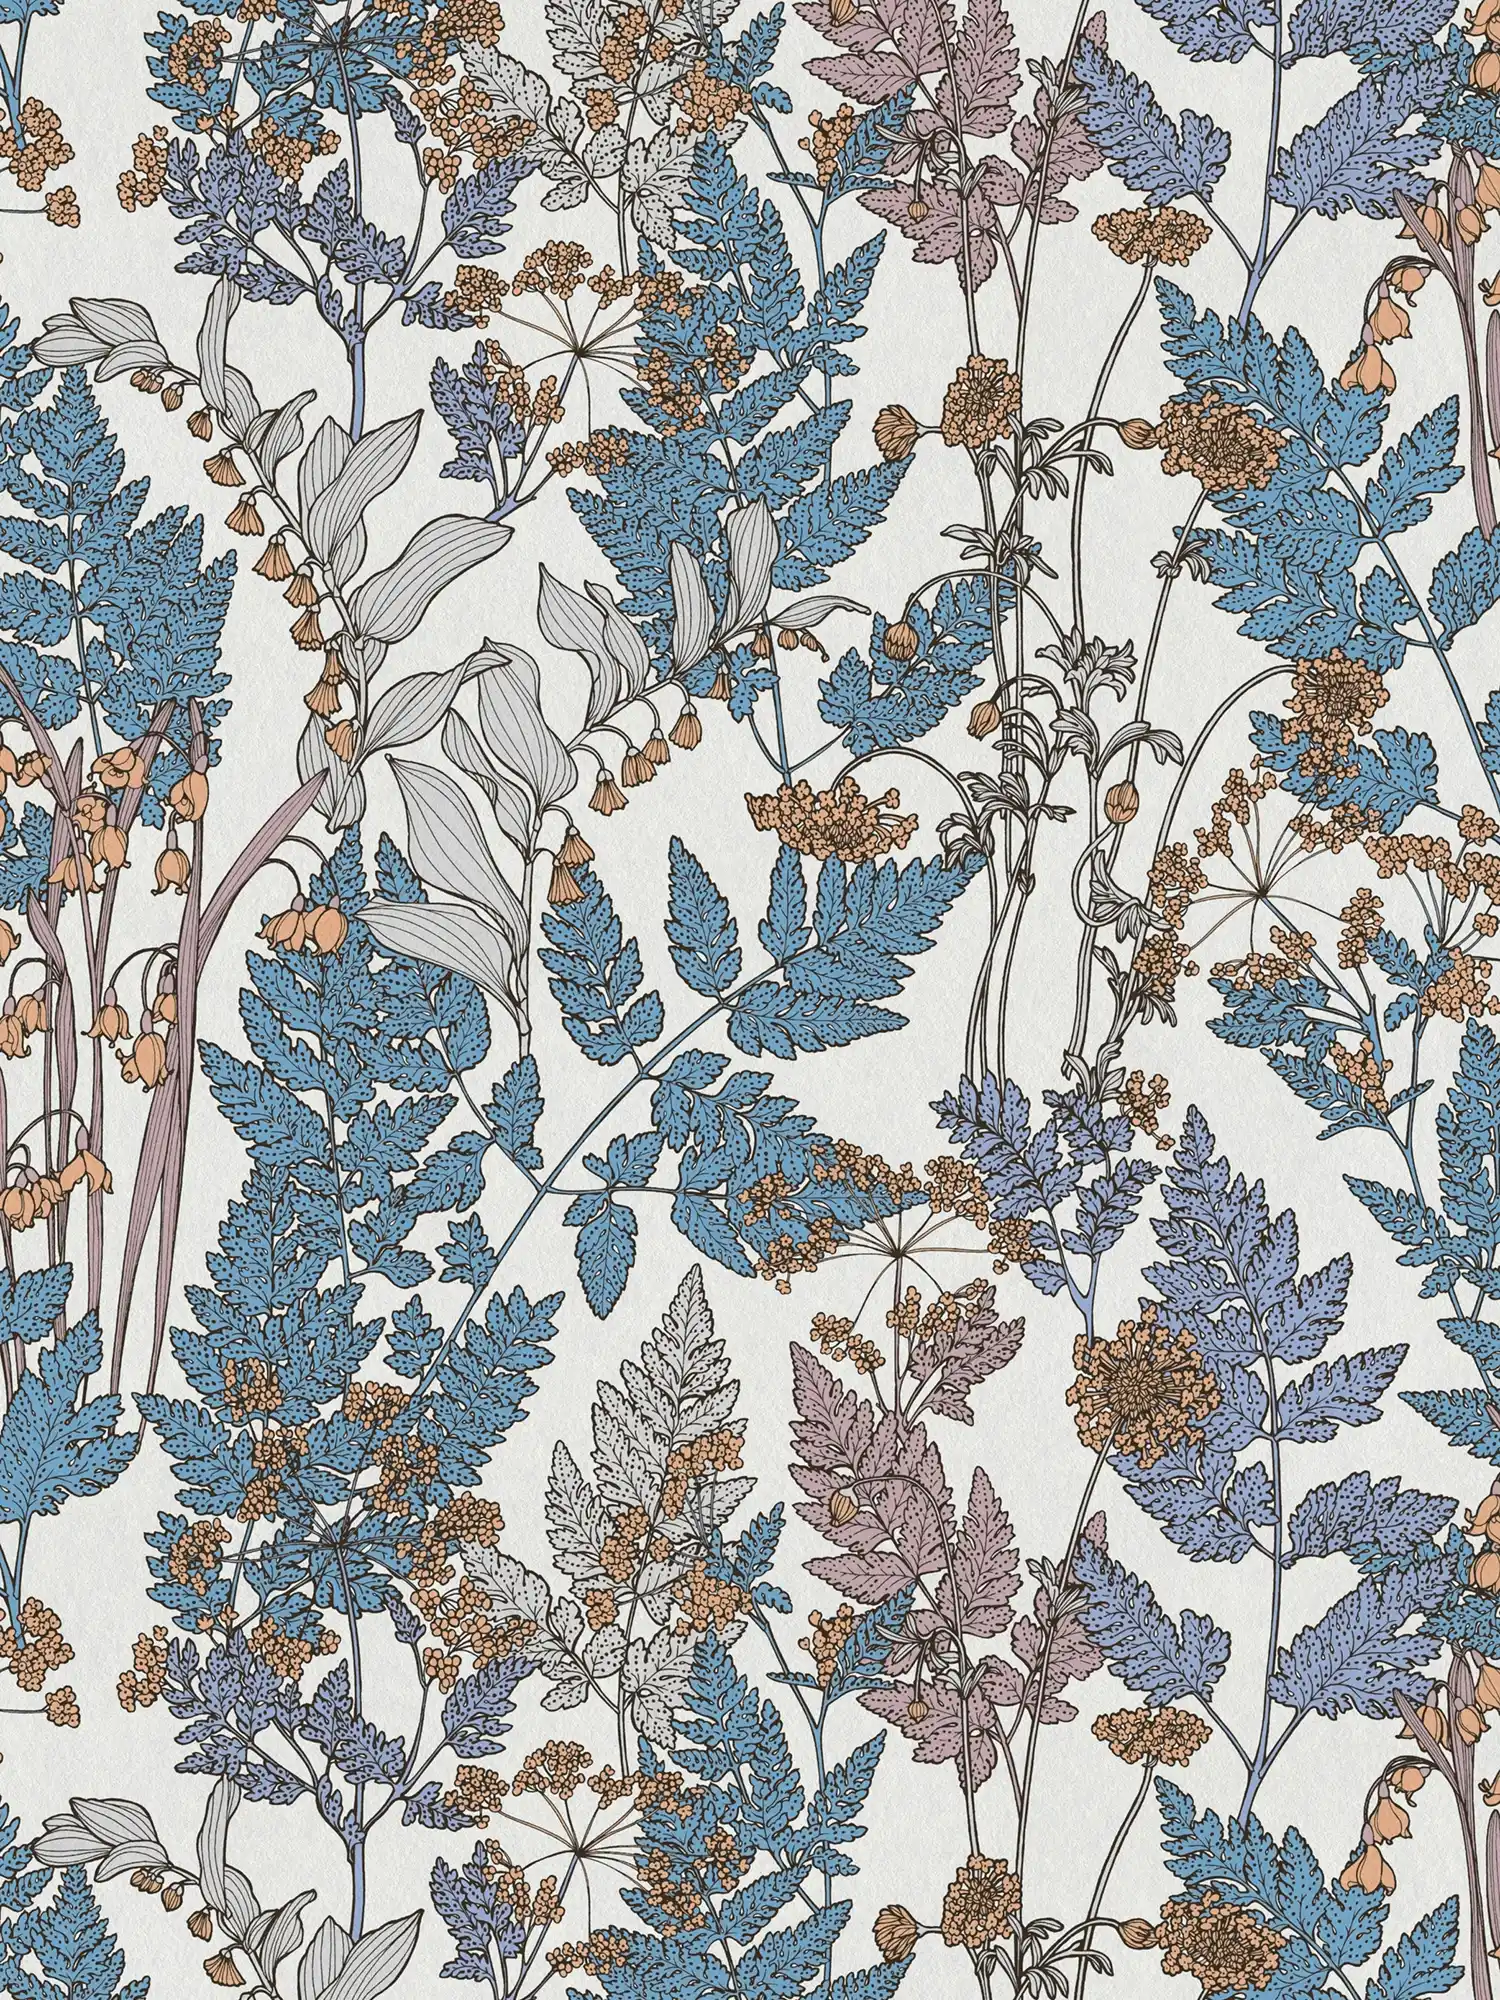         Natur Tapete Blätter & Blüten im modernen Landhaus Stil – Blau, Creme, Beige
    